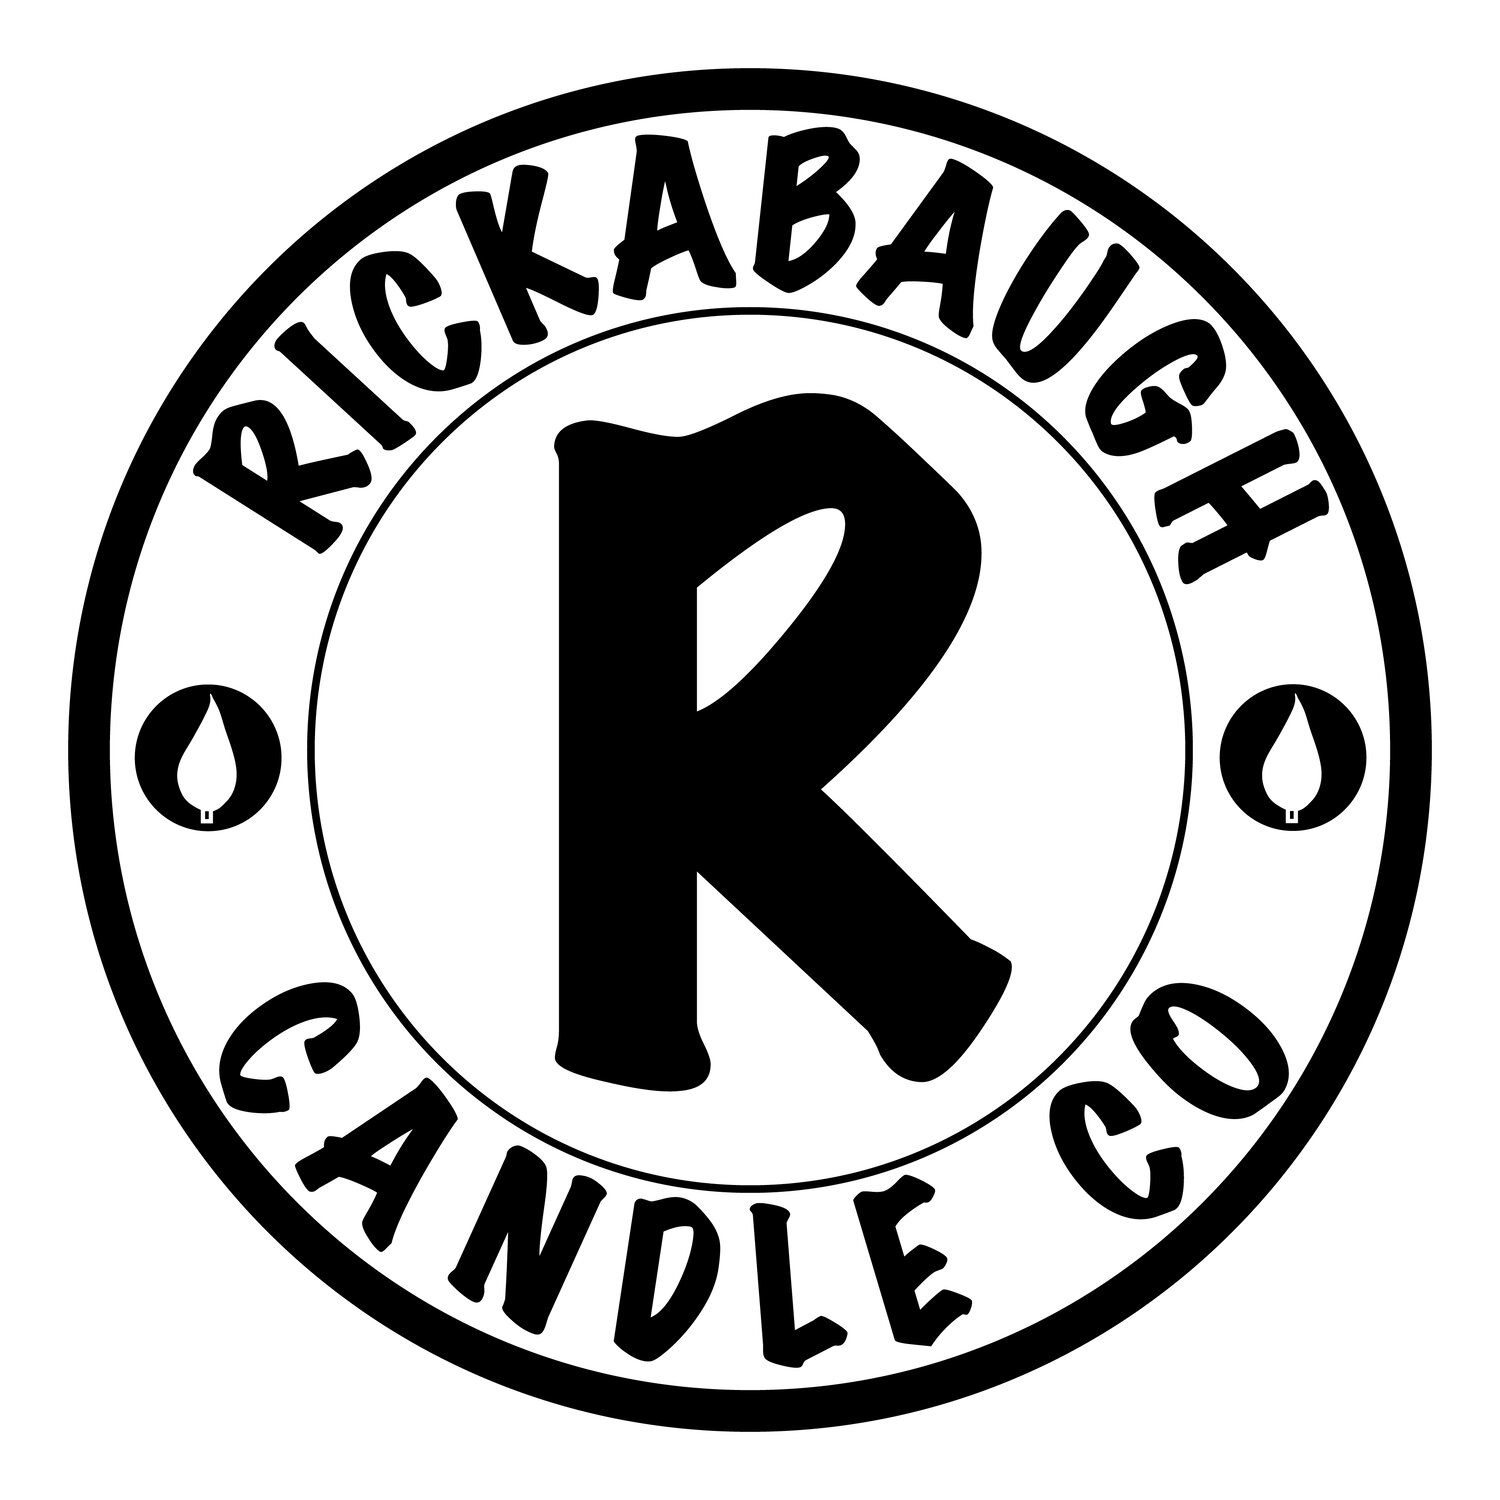 Rickabaugh Candle Co.